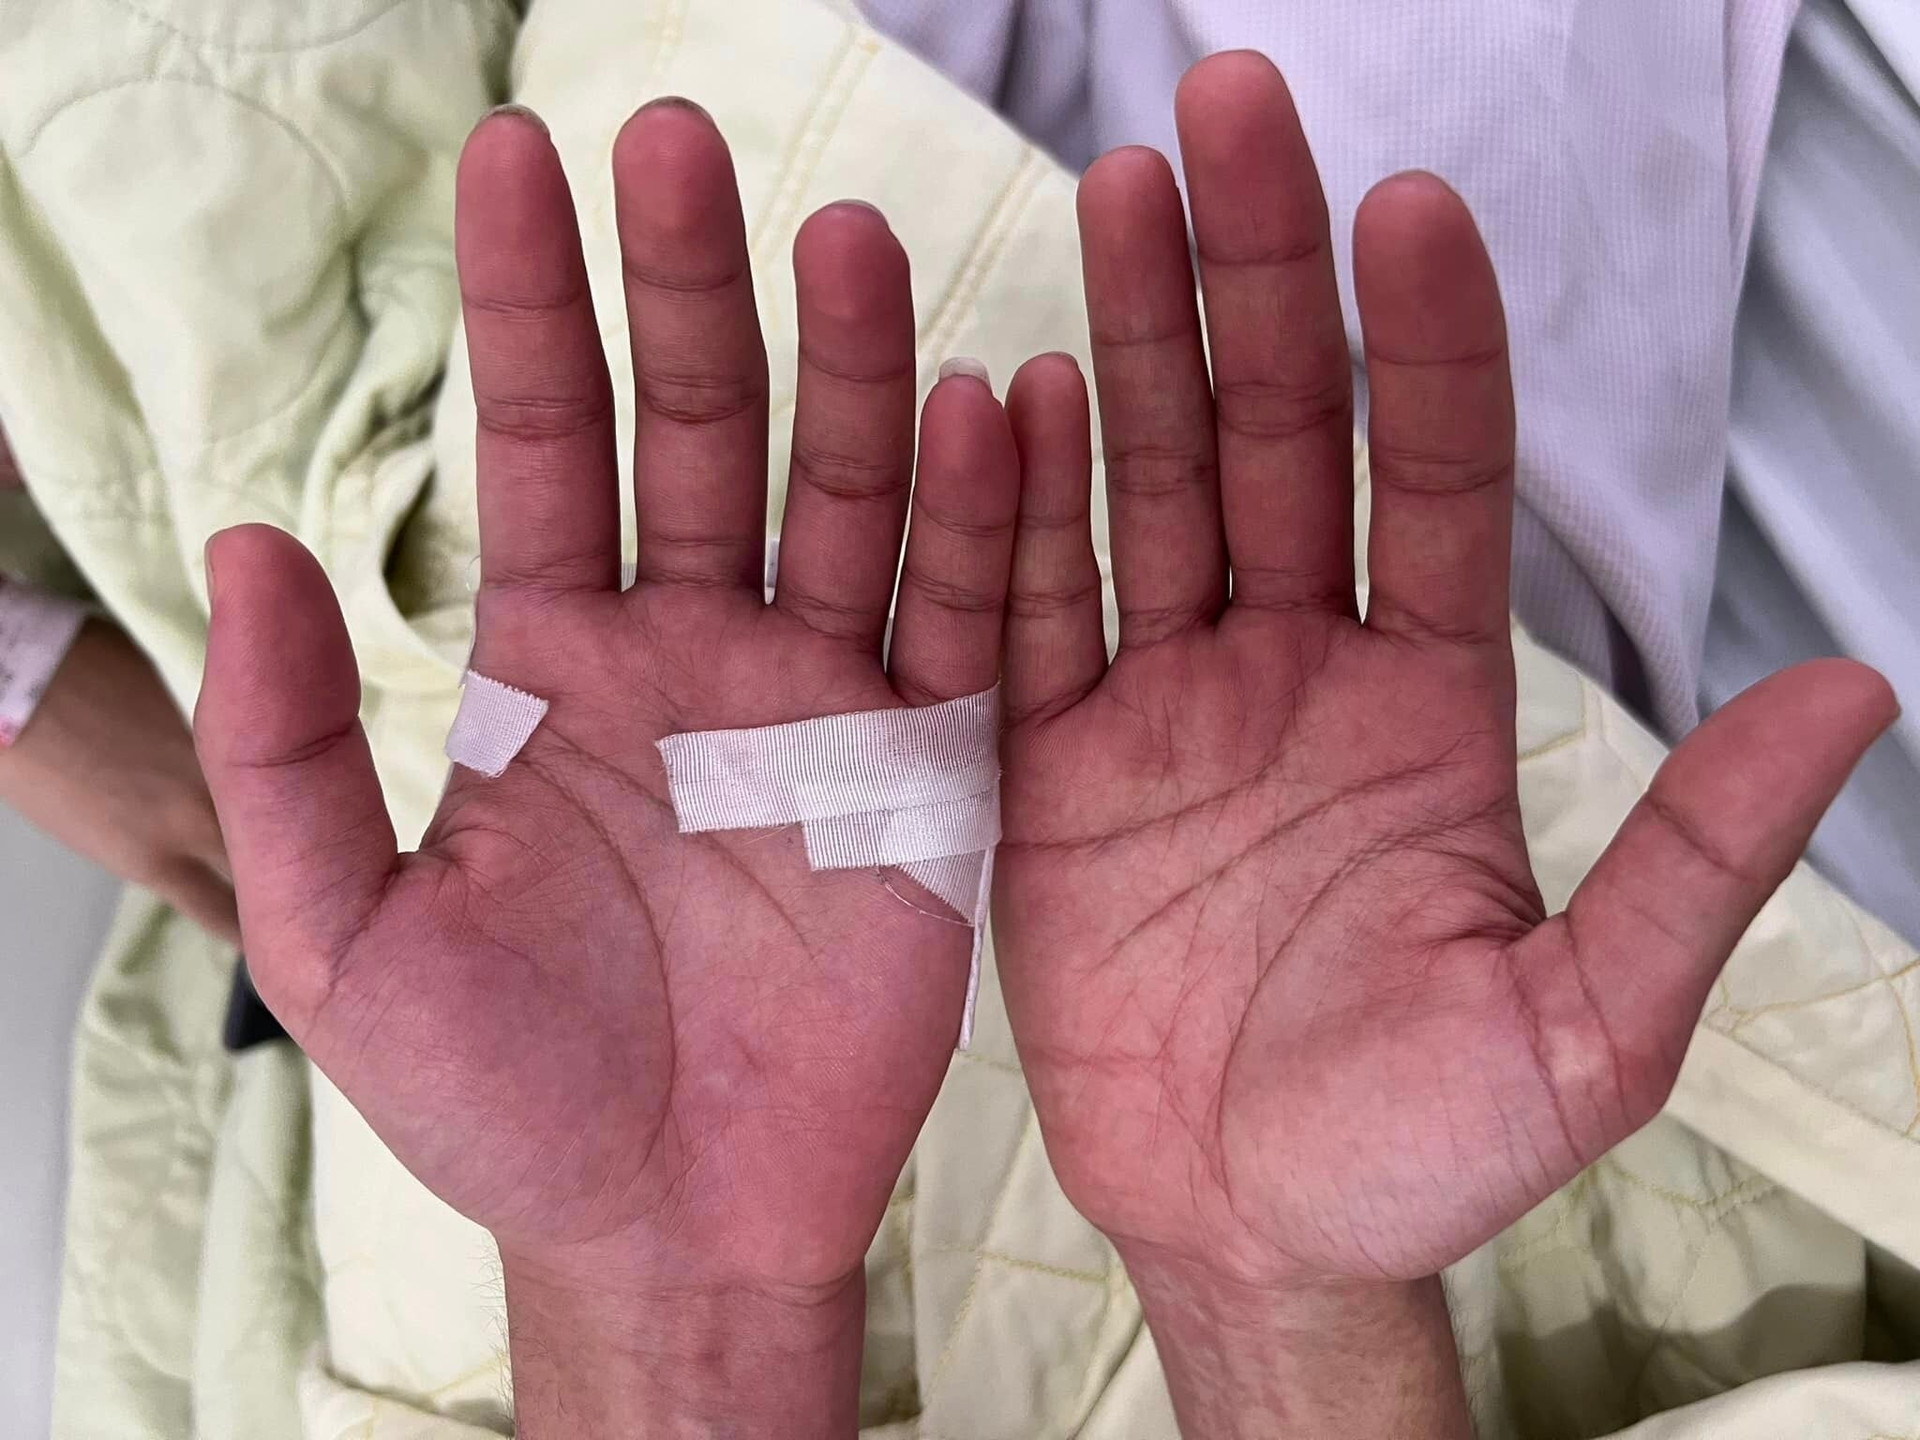 Bệnh nhân bị sốt xuất huyết từ ngày thứ 5-6 trở đi xuất hiện ngứa 2 lòng bàn tay, bàn chân. (Ảnh: BSCC)